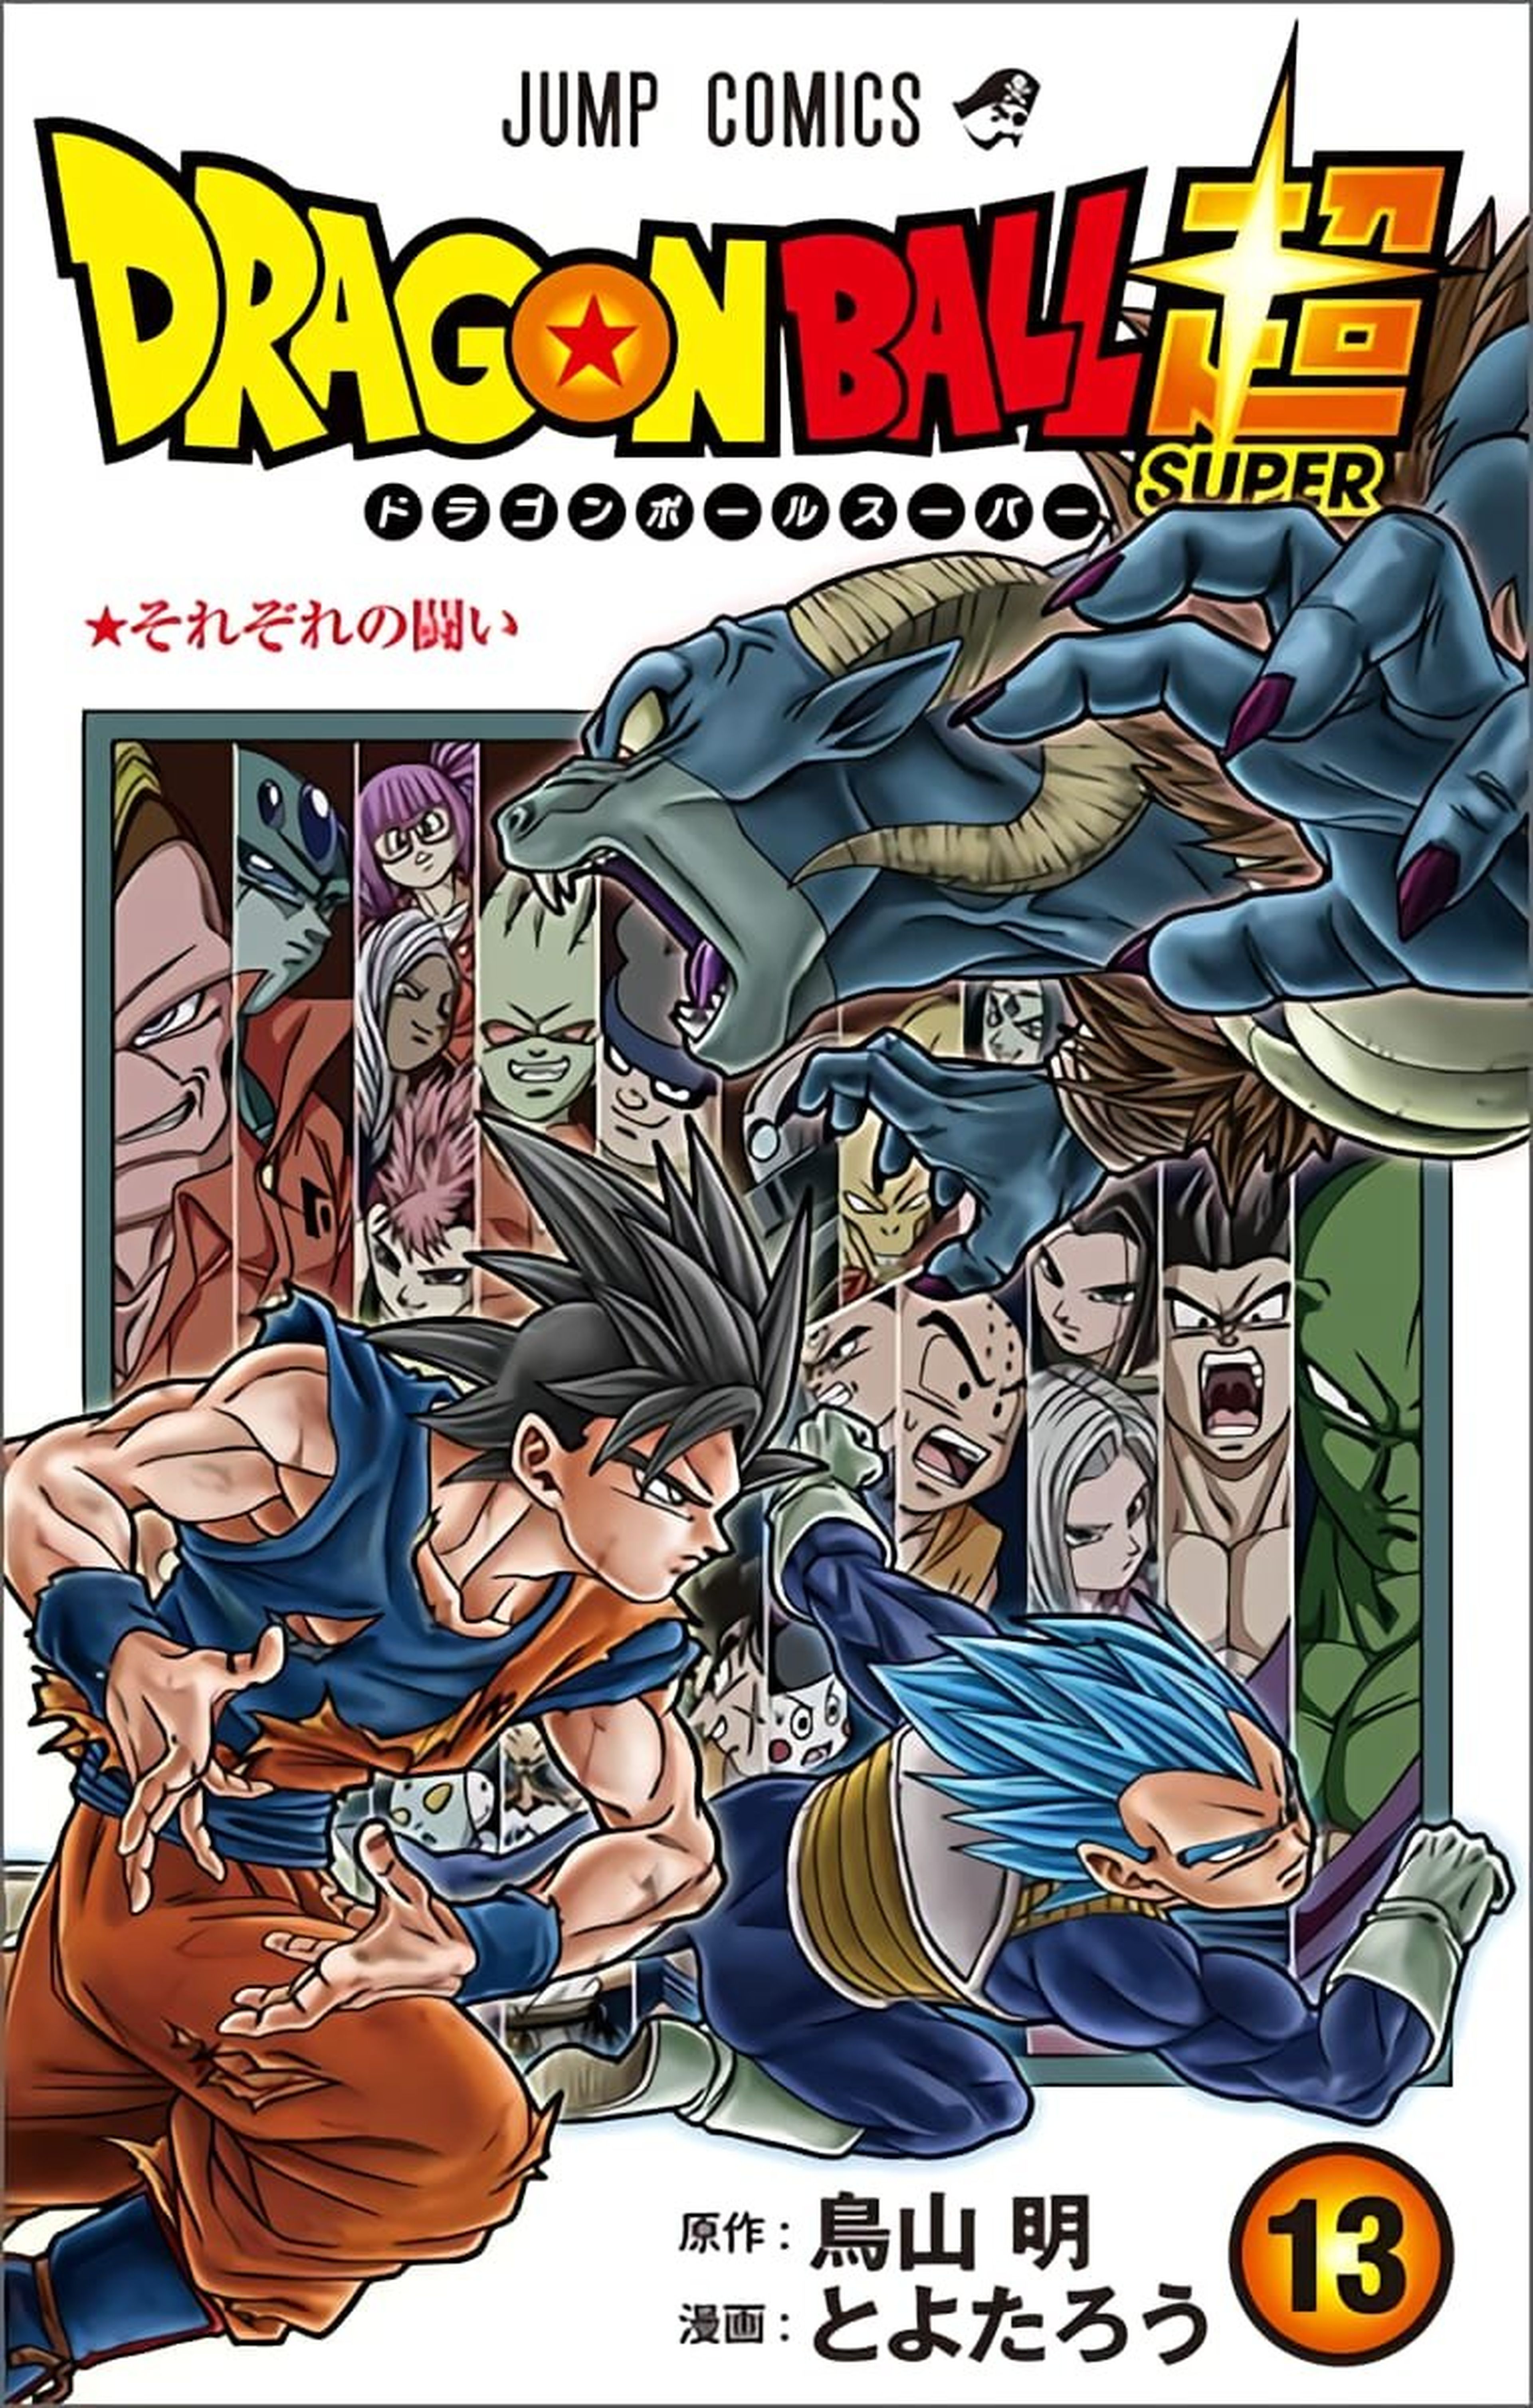 Dragon Ball Super - Portada y fecha de lanzamiento del tomo 13 japonés con Goku, Vegeta y Moro